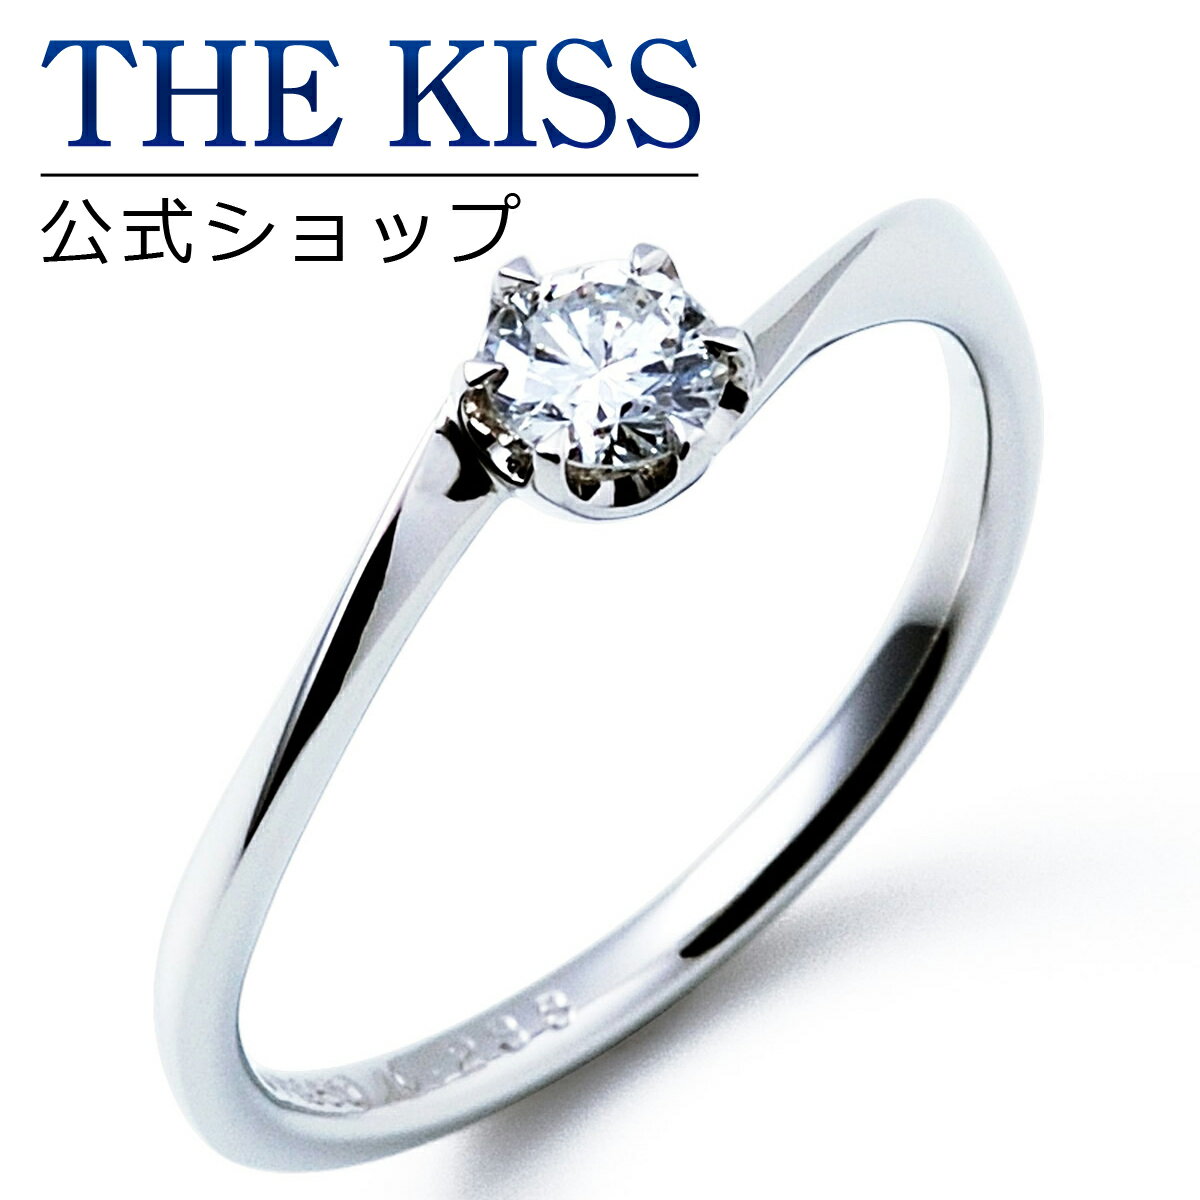 【ラッピング無料】【刻印無料】【THE KISS Anniversary】THE KISS 公式ショップ プラチナ エンゲージリング 婚約指輪 結婚指輪 ブライダルリング プロポーズ THE KISS ザキッス 指輪 6061108020 シンプル 母の日 鑑定書付 ダイヤモンド【0.20ct F VS2 EX】